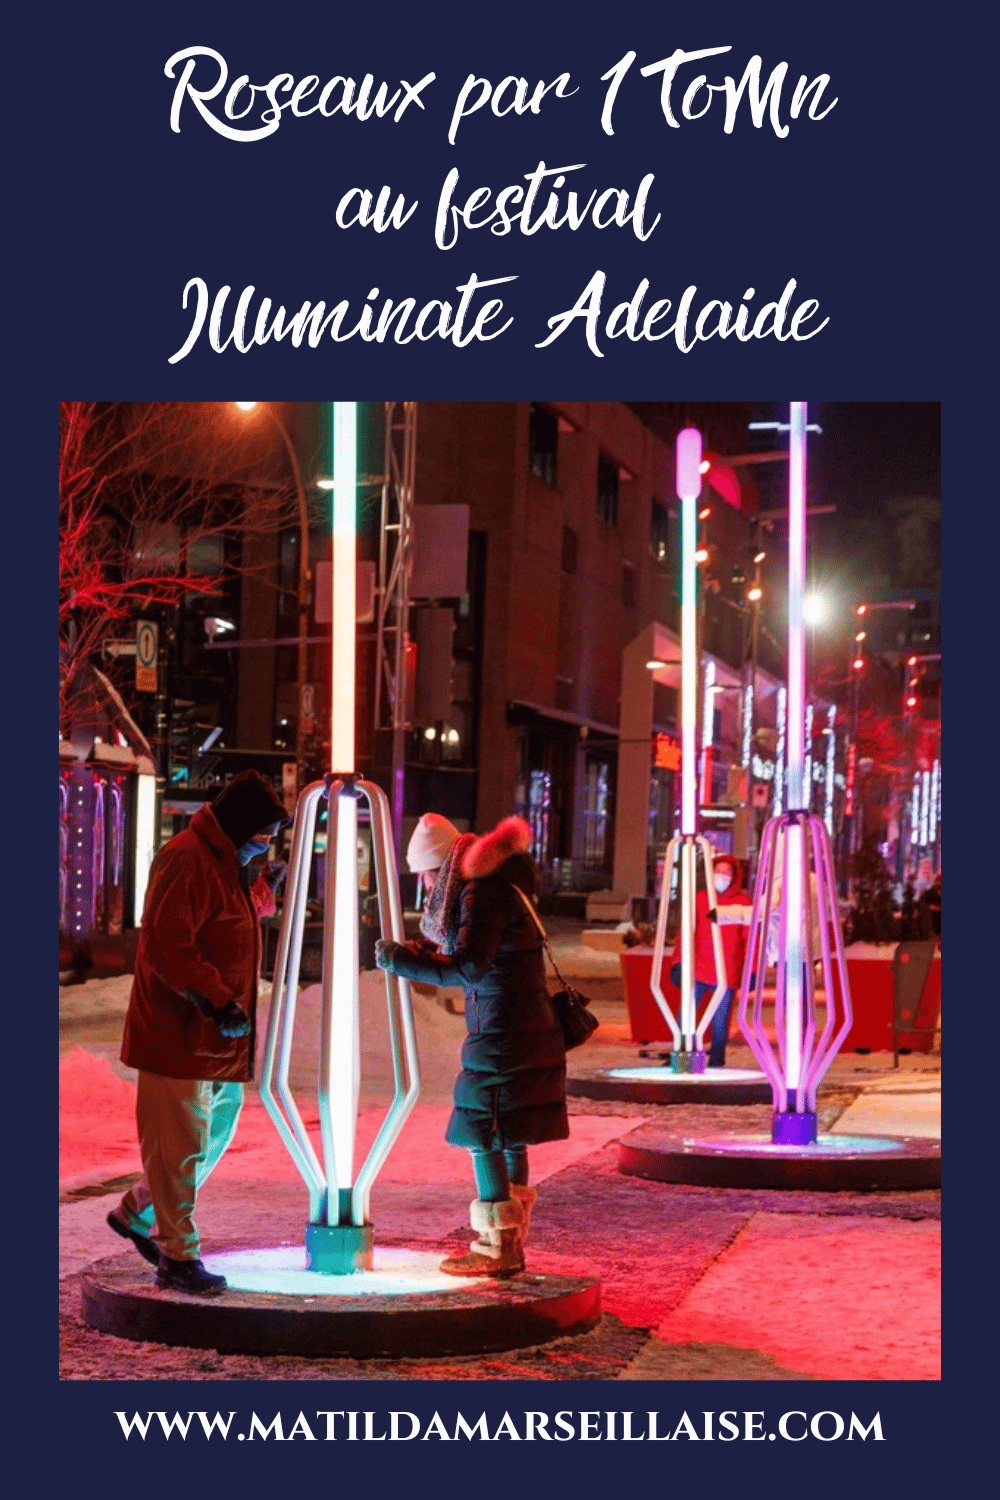 Allez voir Roseaux, l’installation particip-actif des compagnies québécoises Udo et One Touch of Madness, pour être émerveillé au festival Illuminate Adelaide